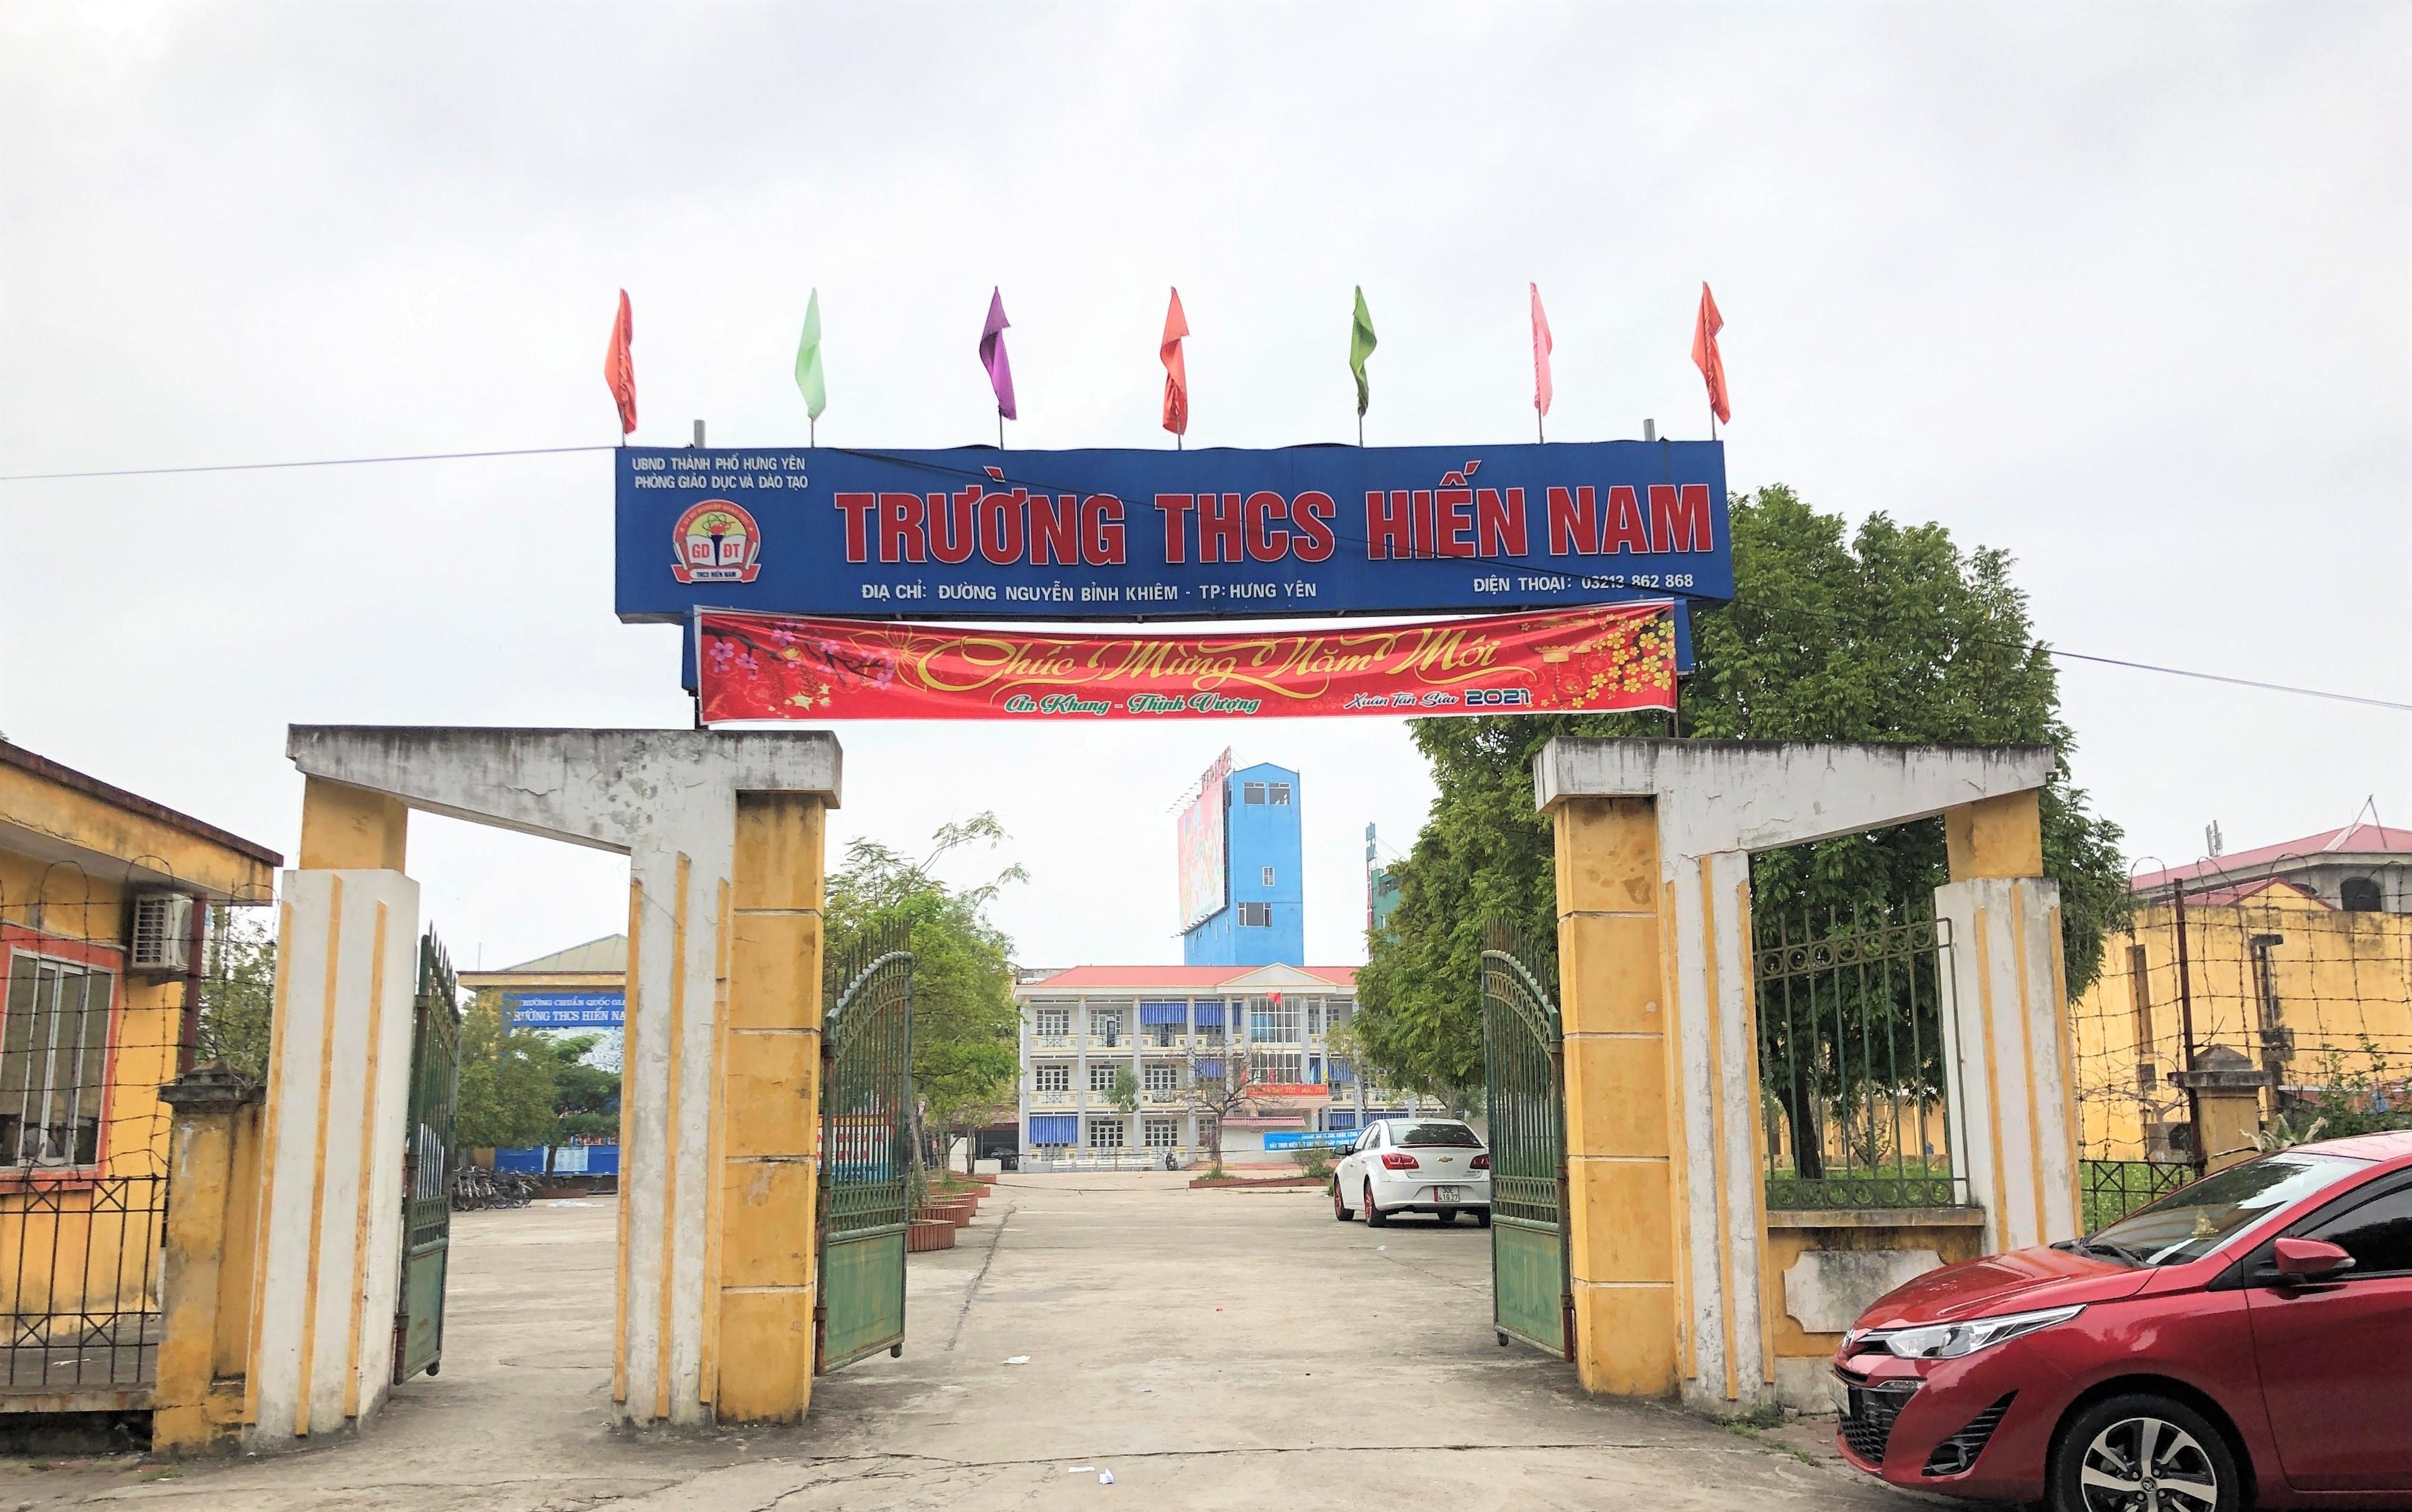 Trường THCS Hiến Nam, thành phố Hưng Yên (Hưng Yên).